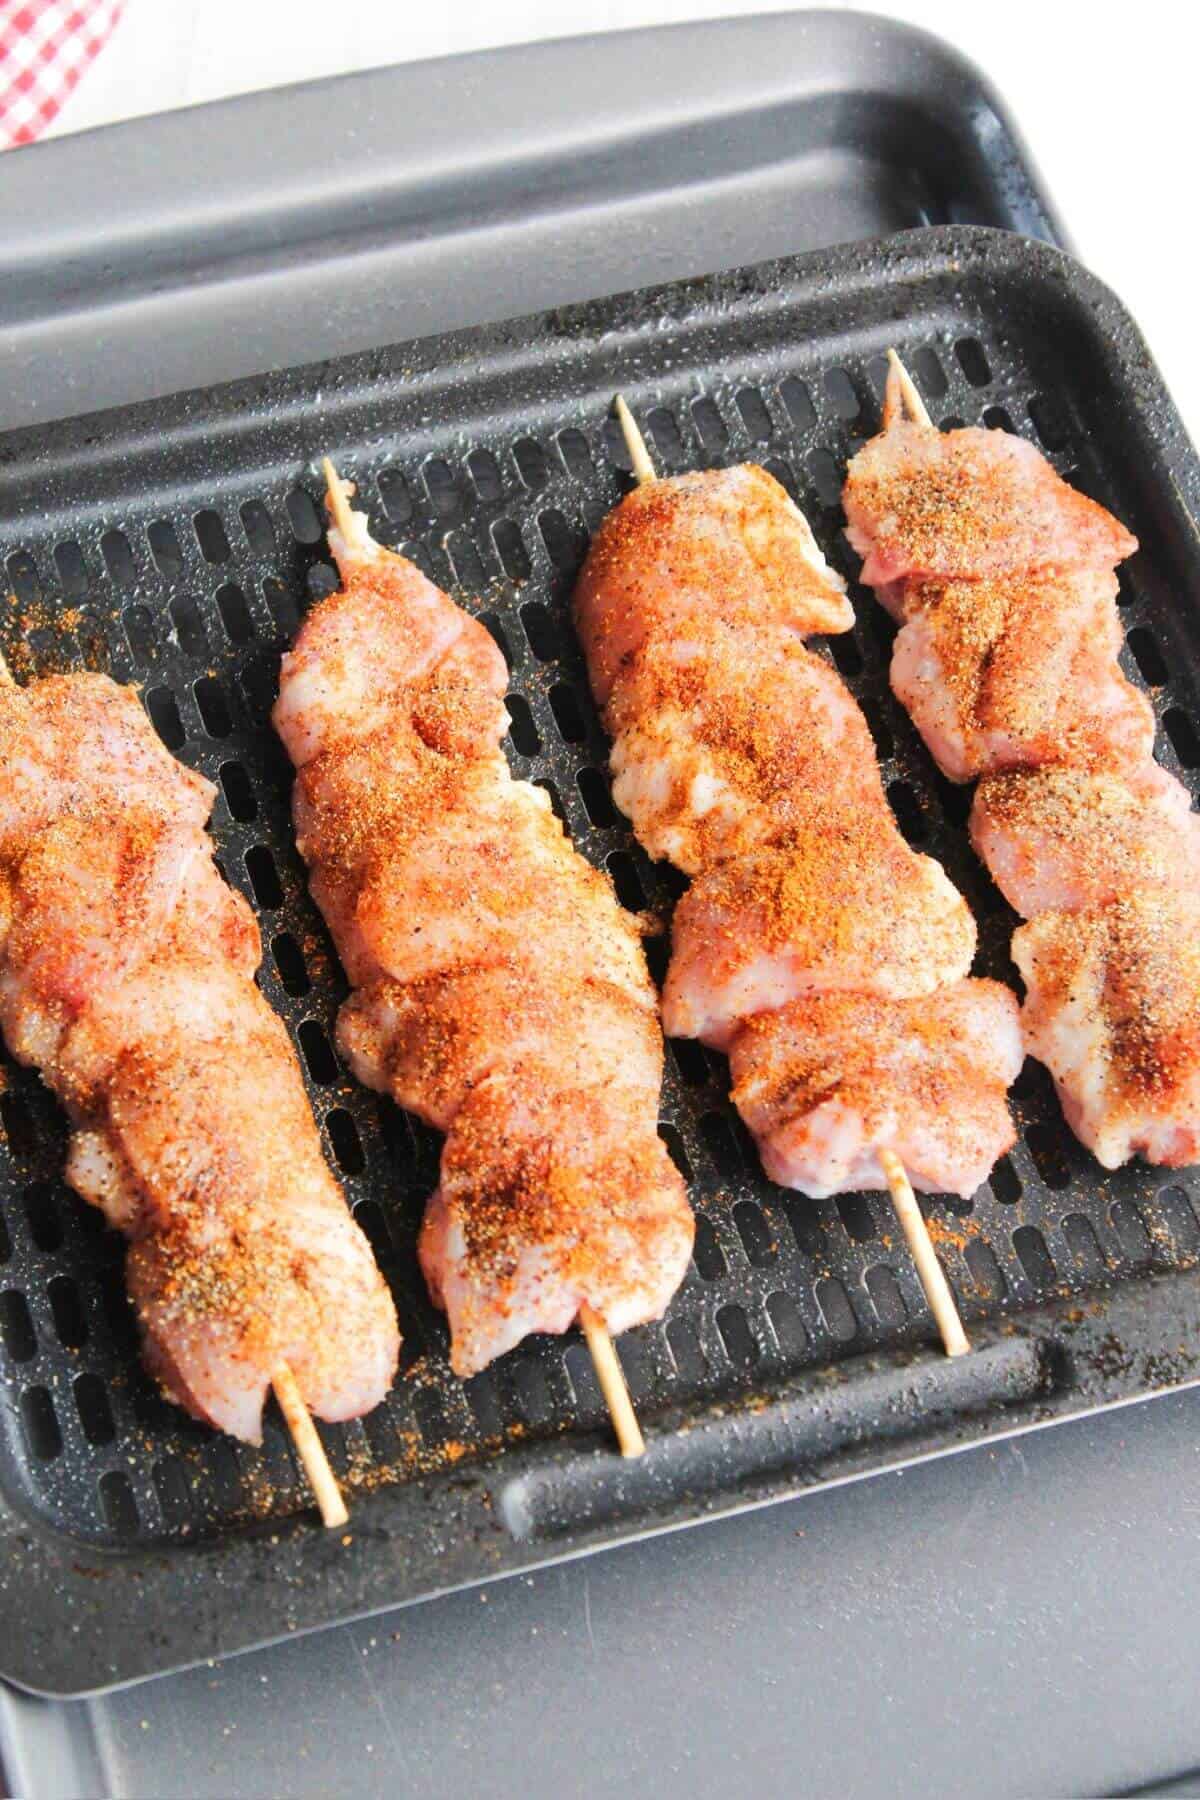 Prepared chicken skewers on air fryer tray.